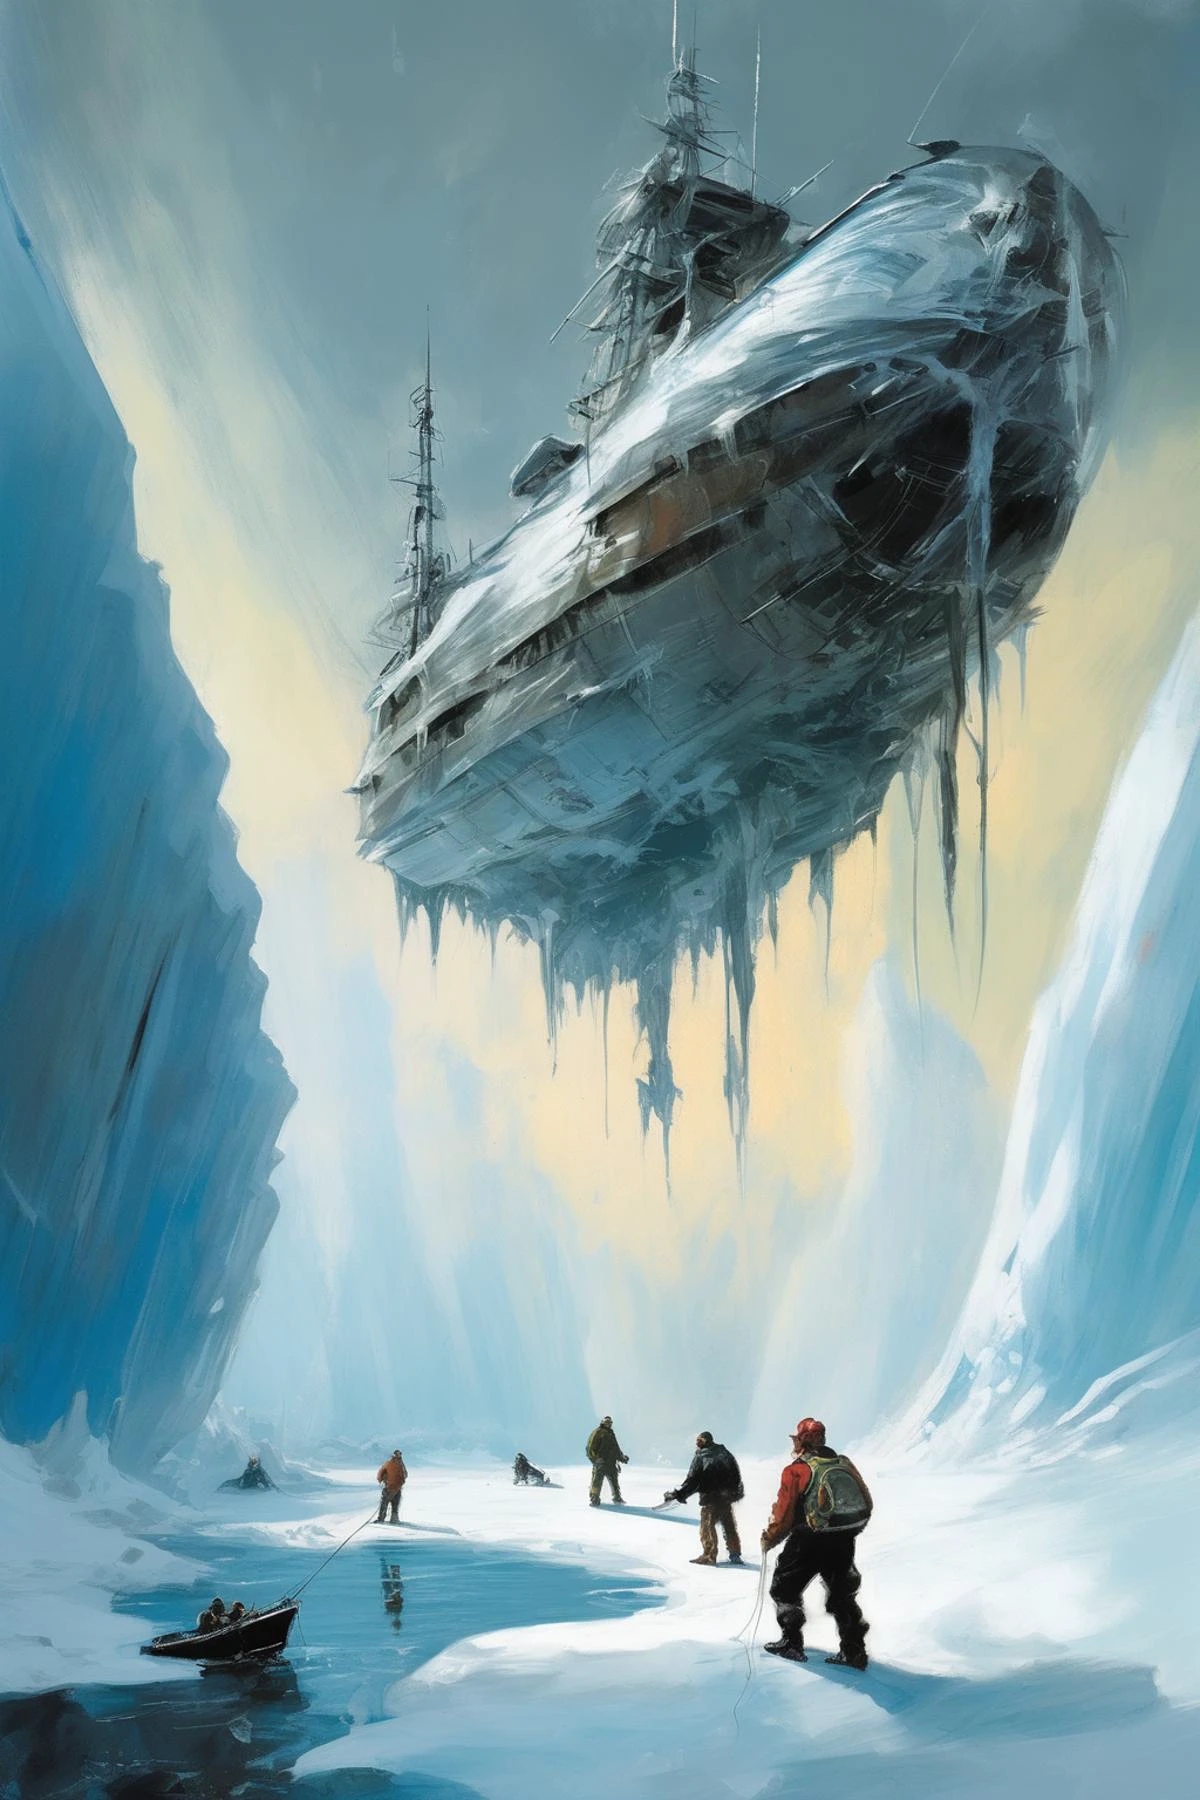 Estilo John Berkey - imagem desenhada à mão de um pescador corpulento masculino encontrando uma nave alienígena congelada presa em uma geleira no estilo artístico de John Berkey